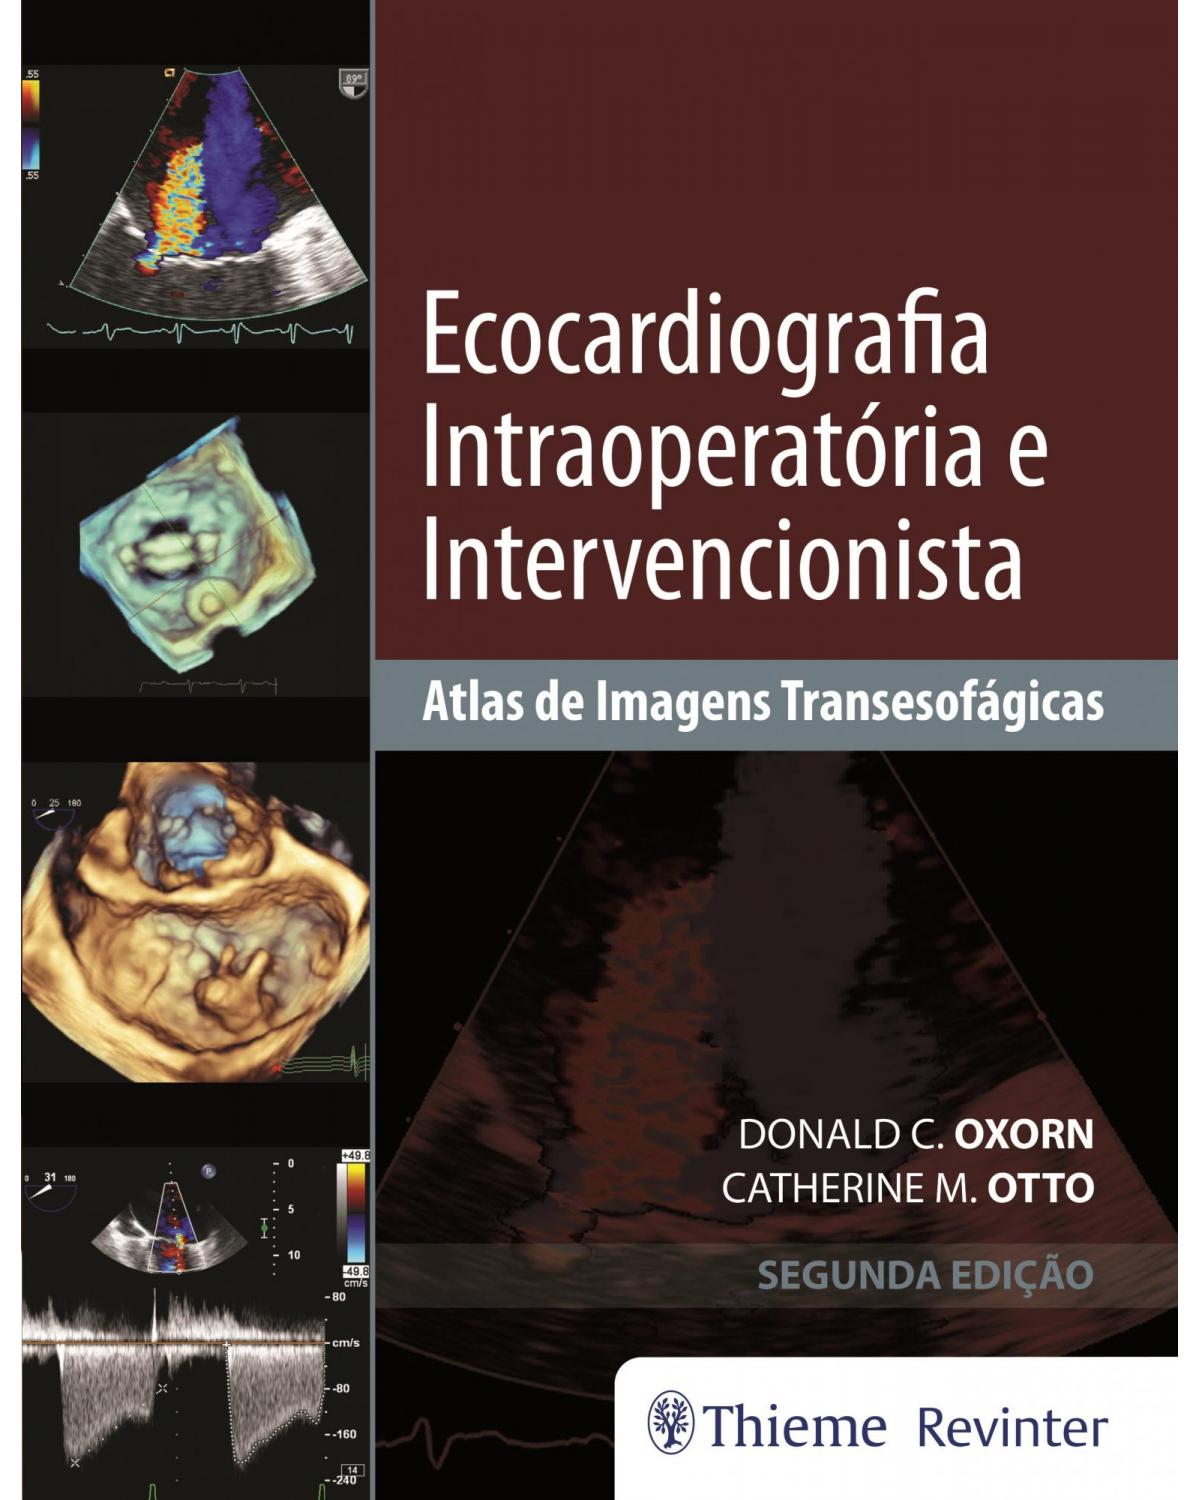 Ecocardiografia intraoperatória e intervencionista - atlas de imagens transesofágicas - 2ª Edição | 2018